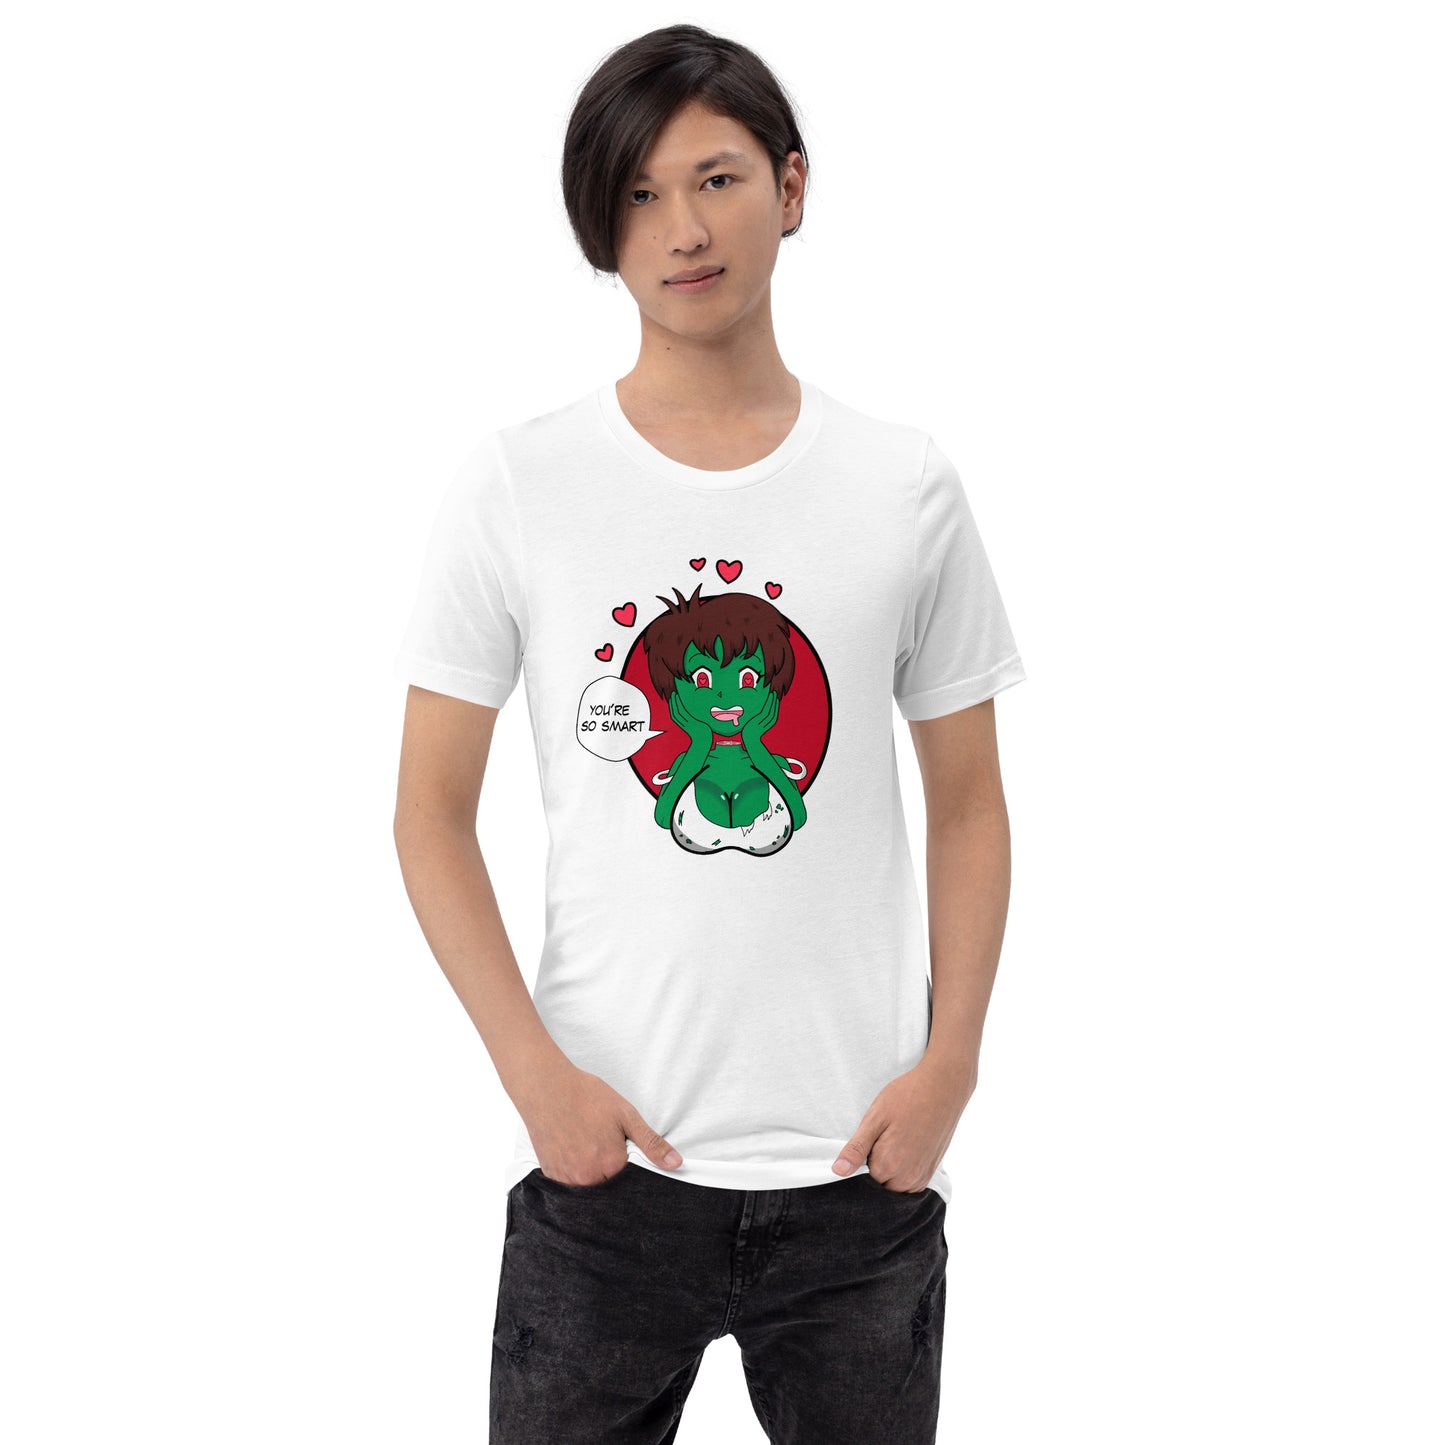 Unisext-shirt der Zombie-Mädchen-Liebe-Gehirne